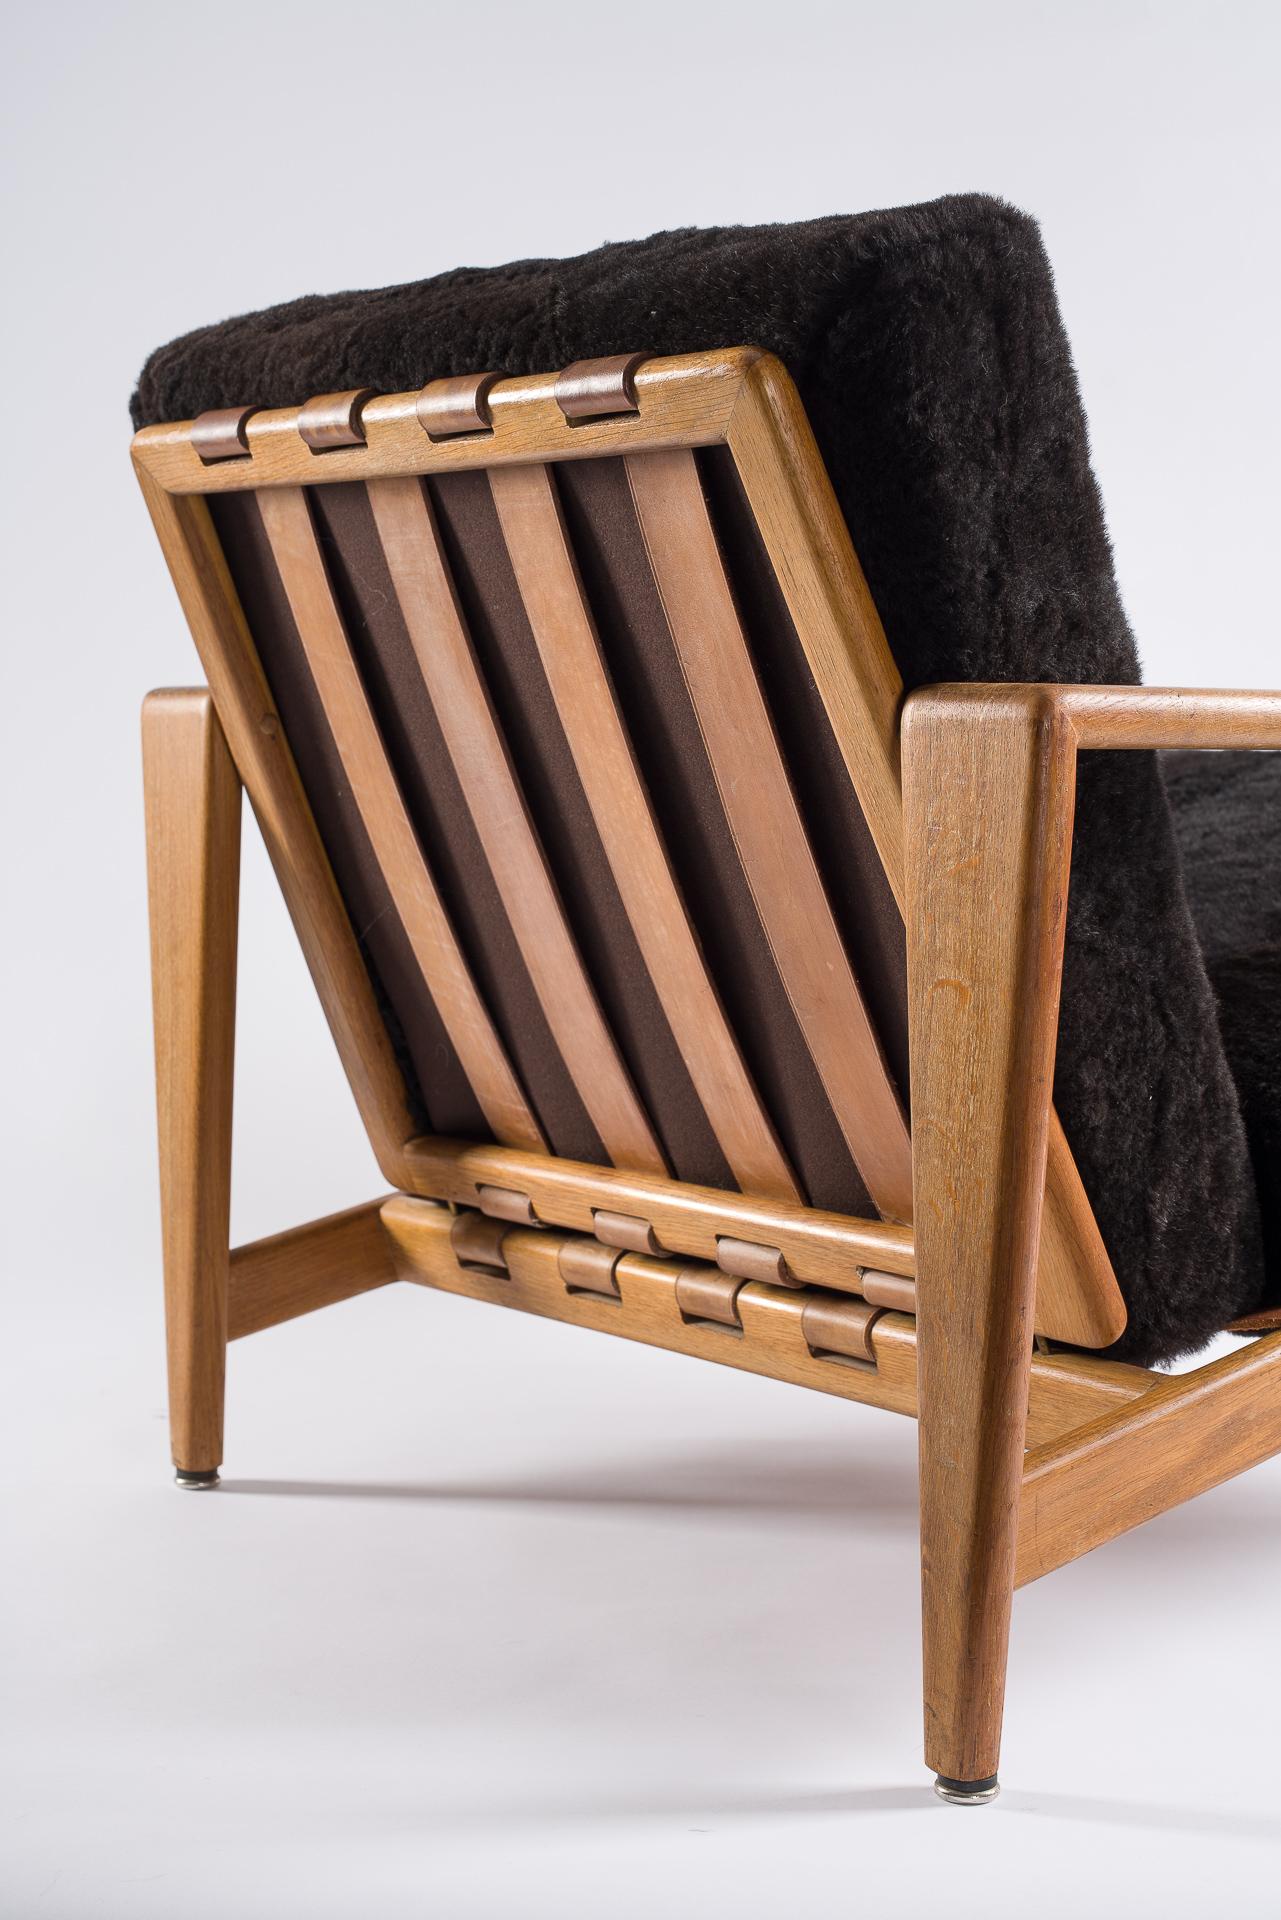 Hand-Crafted Svante Skogh, Bodö Easy Chairs From AB Hjertquist & Nässjö, 1957